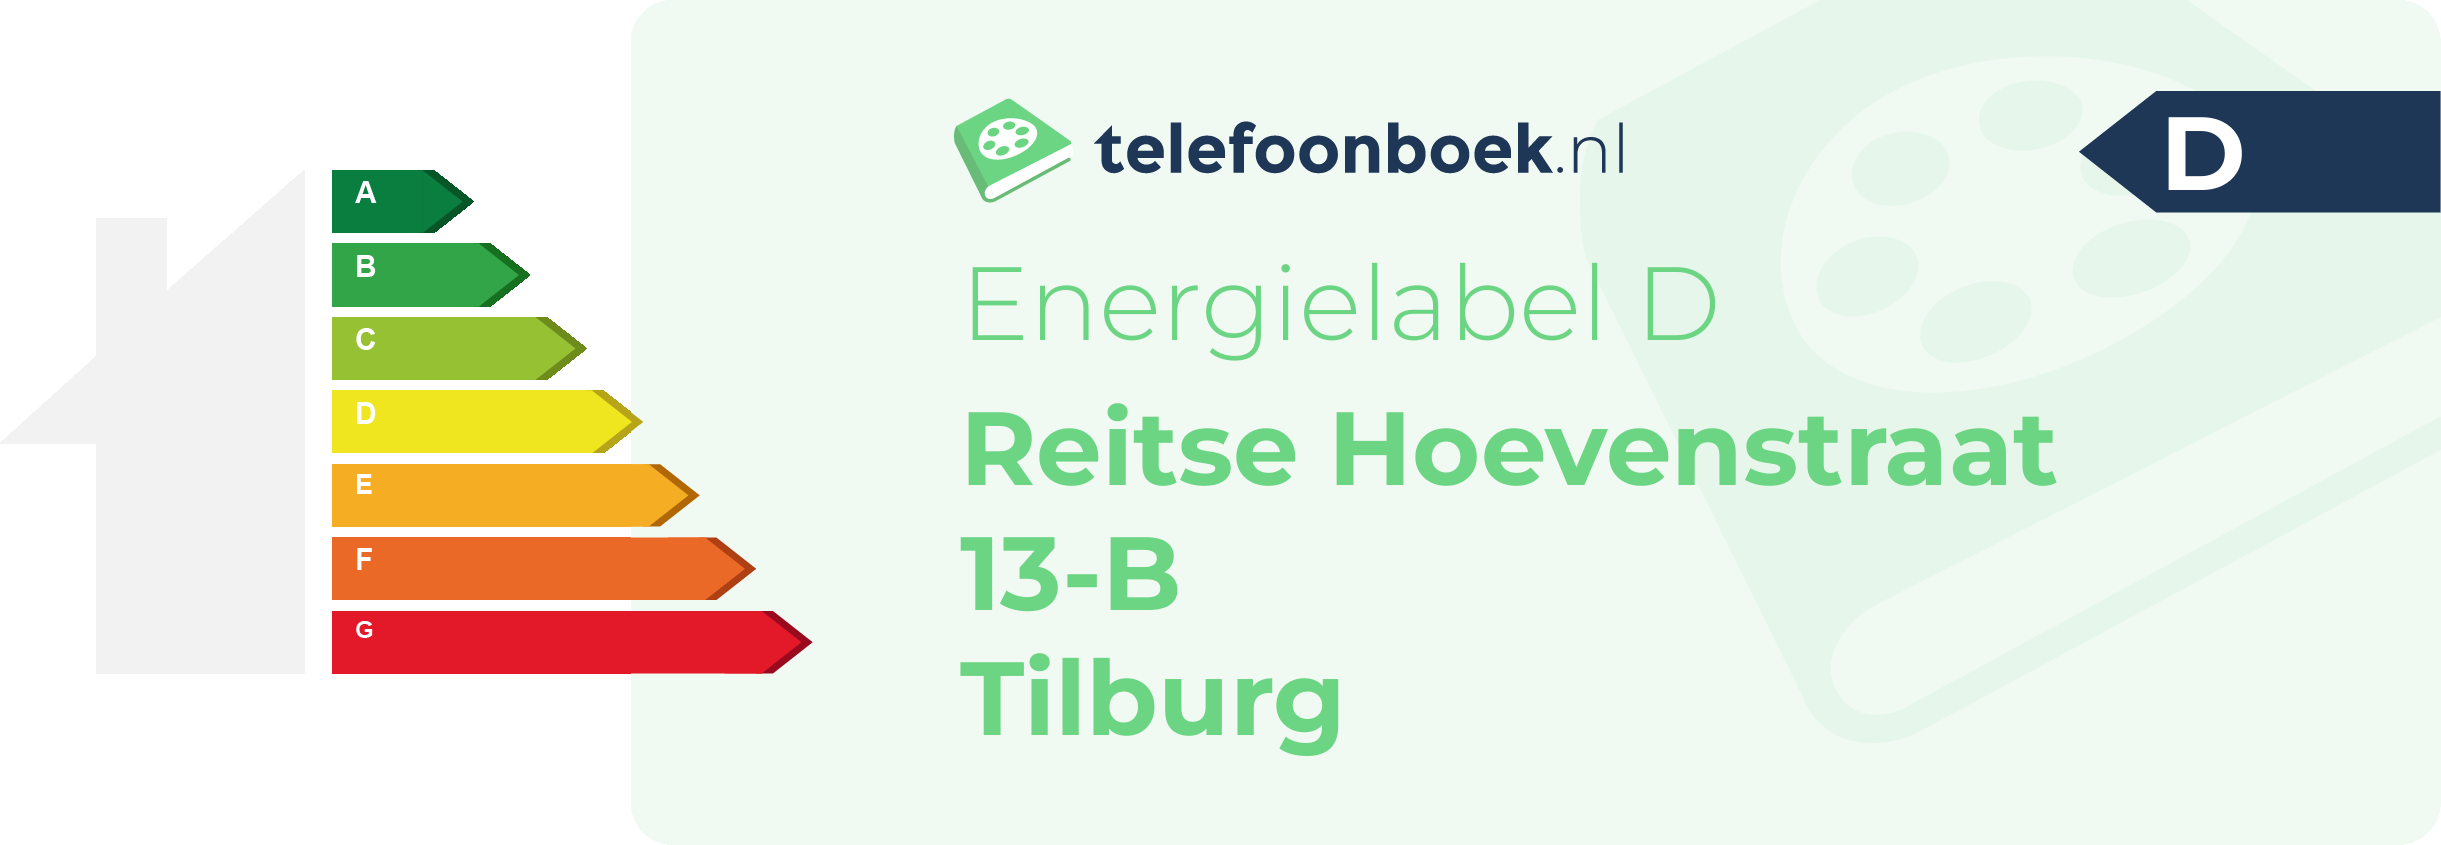 Energielabel Reitse Hoevenstraat 13-B Tilburg